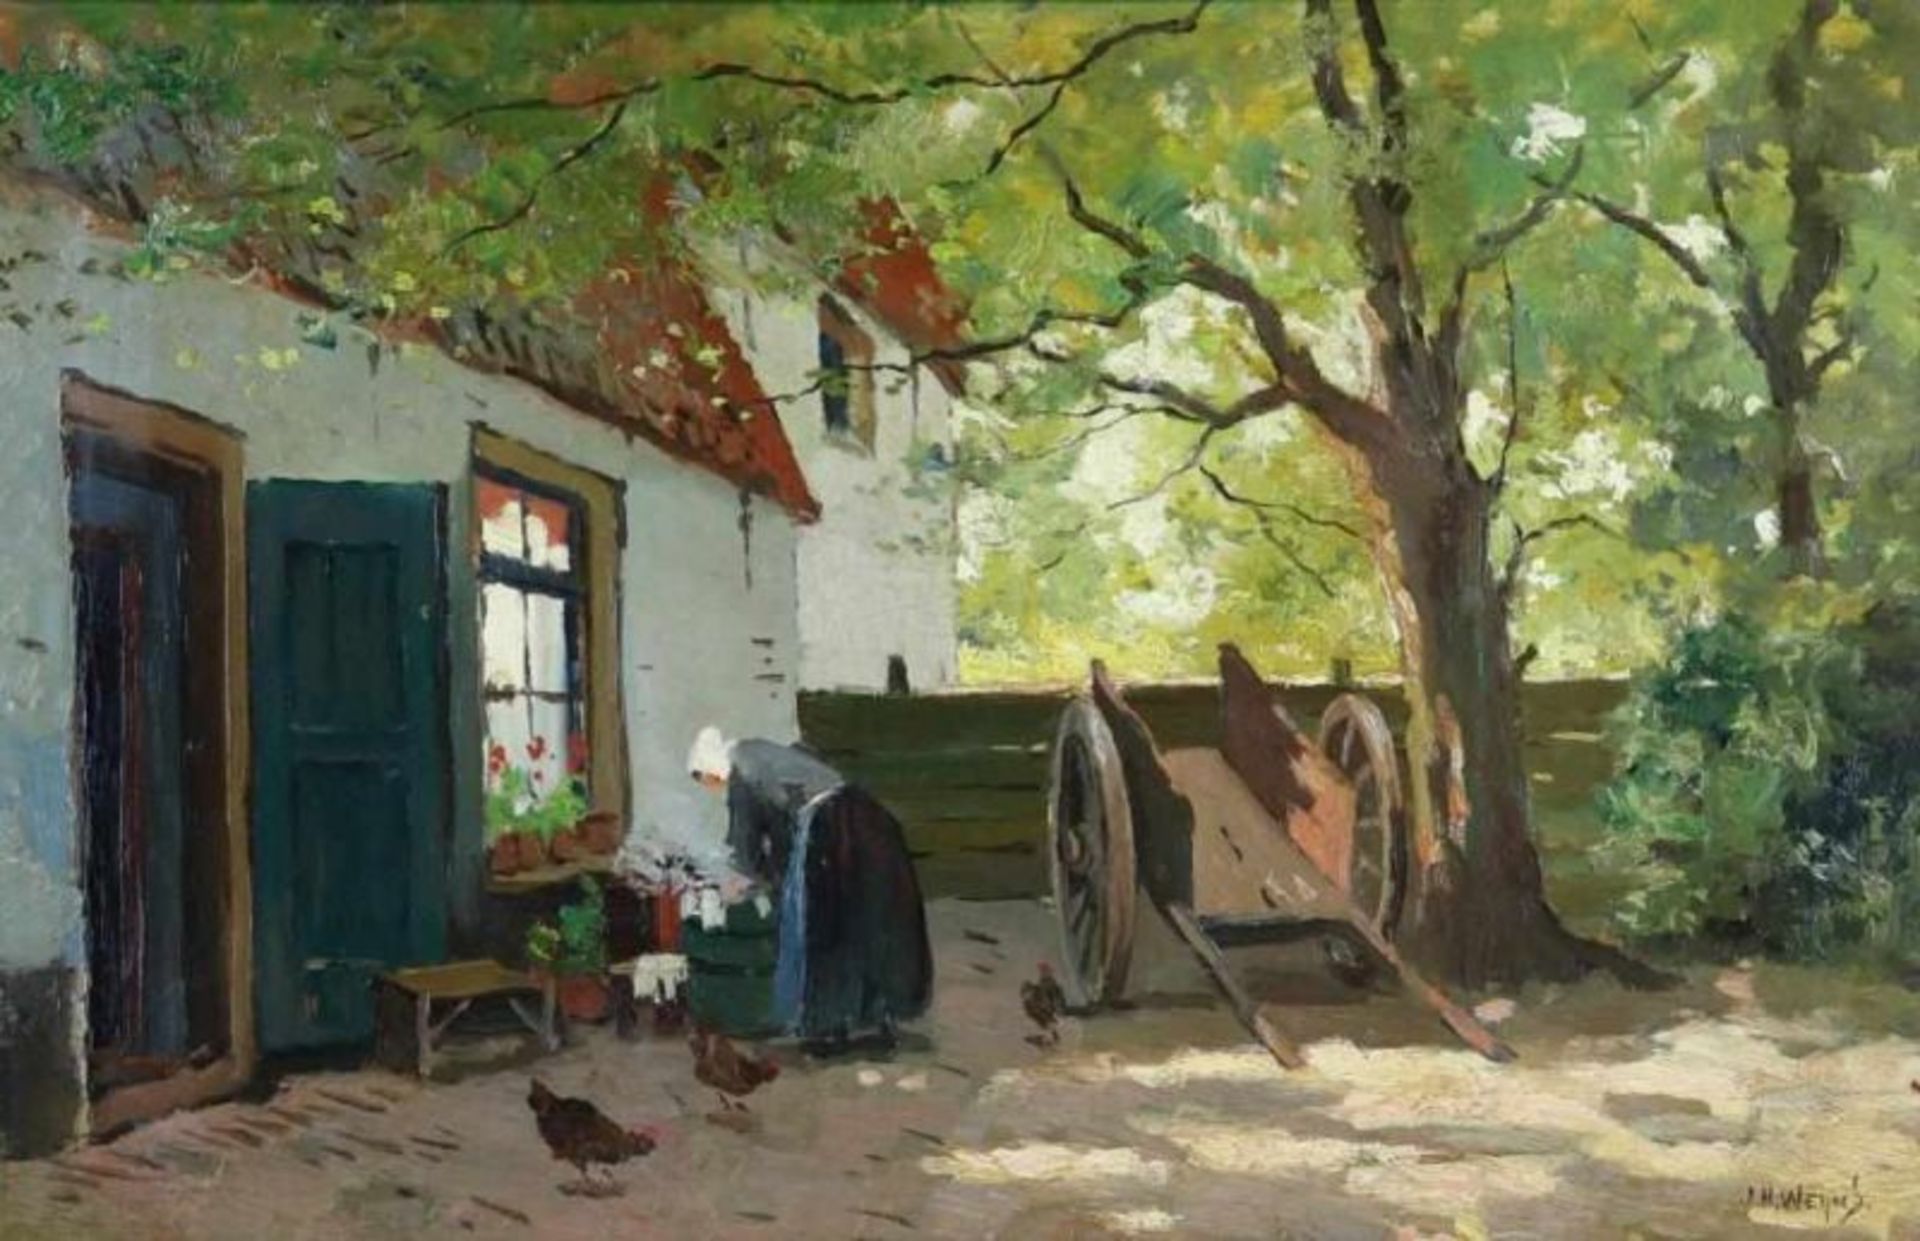 WEIJNS, JAN HARM (1864-1945), ges. r.o., boerin met kippen bij boerderij, doek 37 x 55 cm. WEIJNS